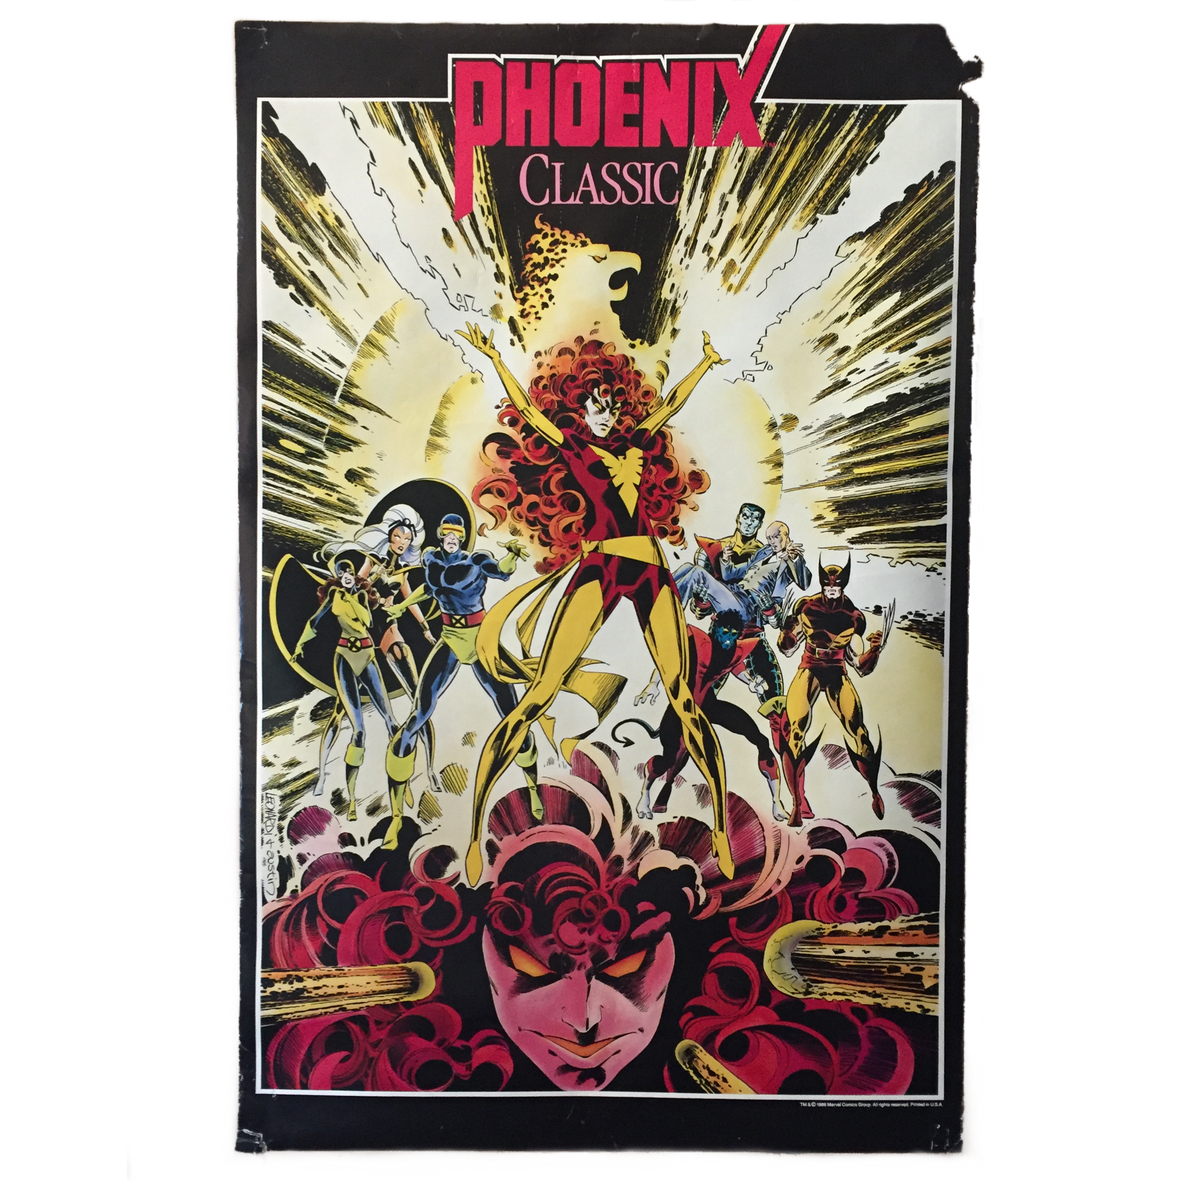 Vintage X-Men &quot;Phoenix Classic&quot; Poster